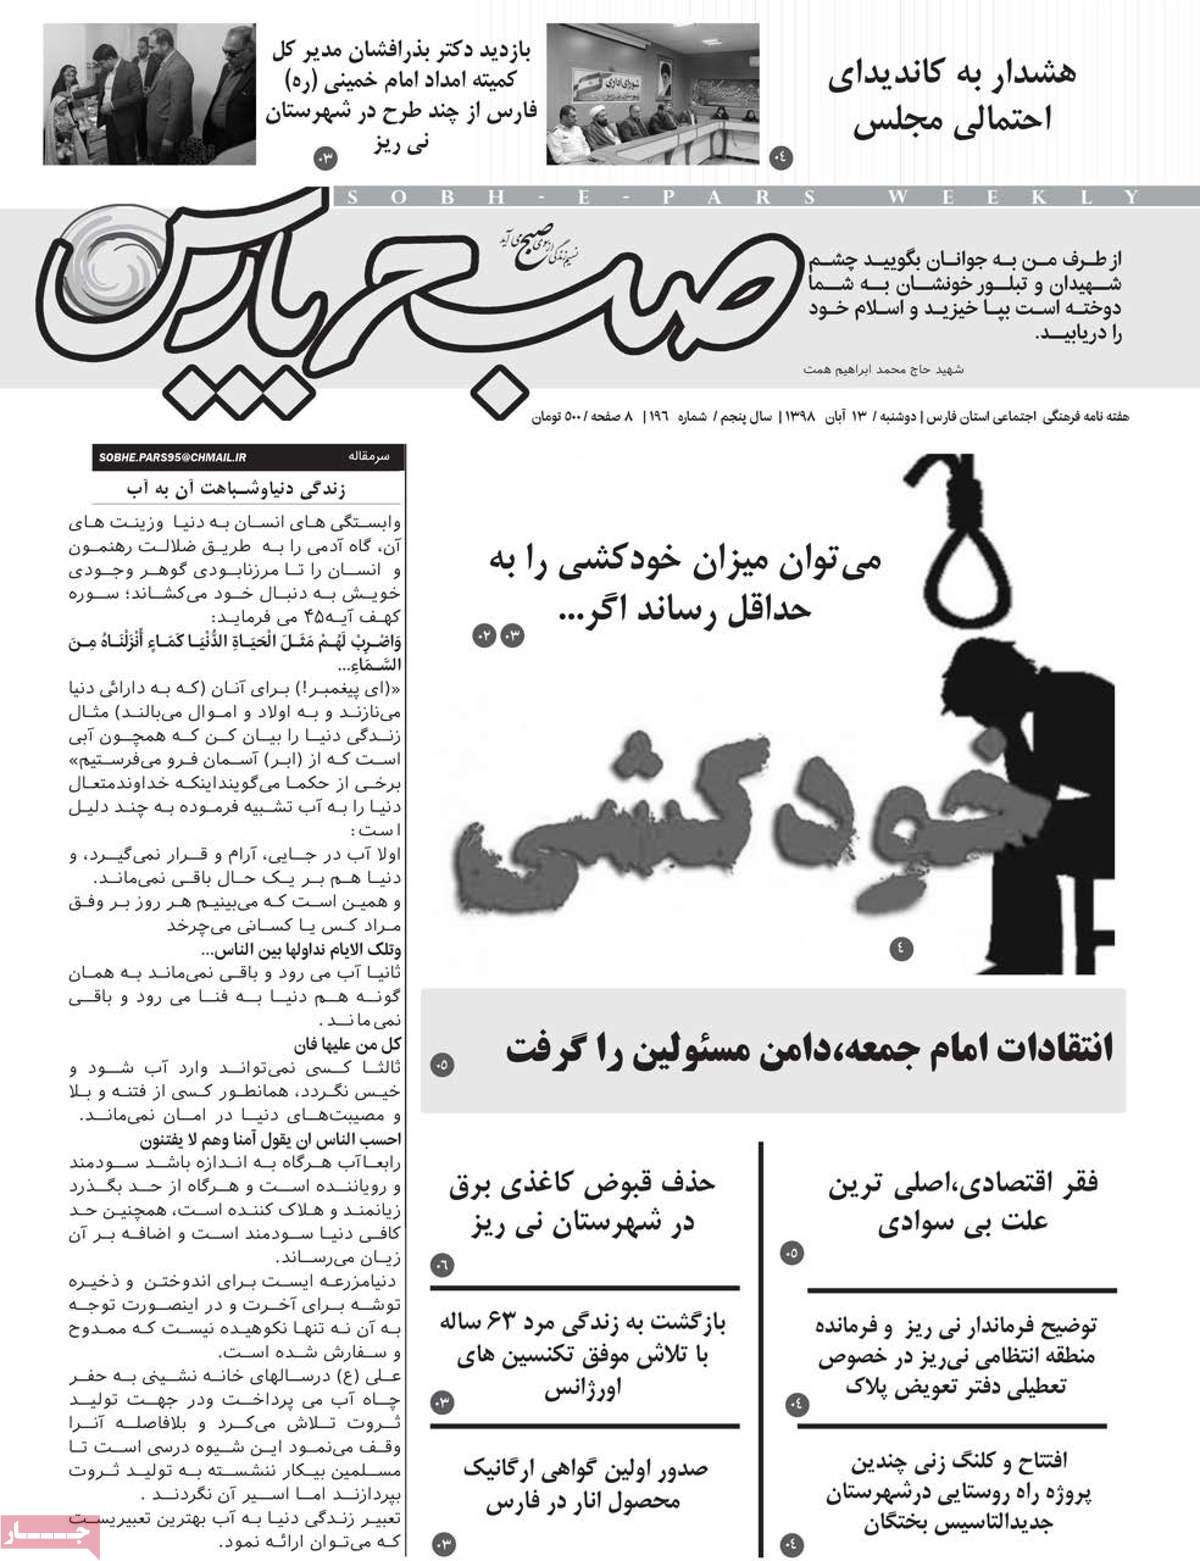 صفحه نخست مجله صبح پارس - دوشنبه, ۱۳ آبان ۱۳۹۸